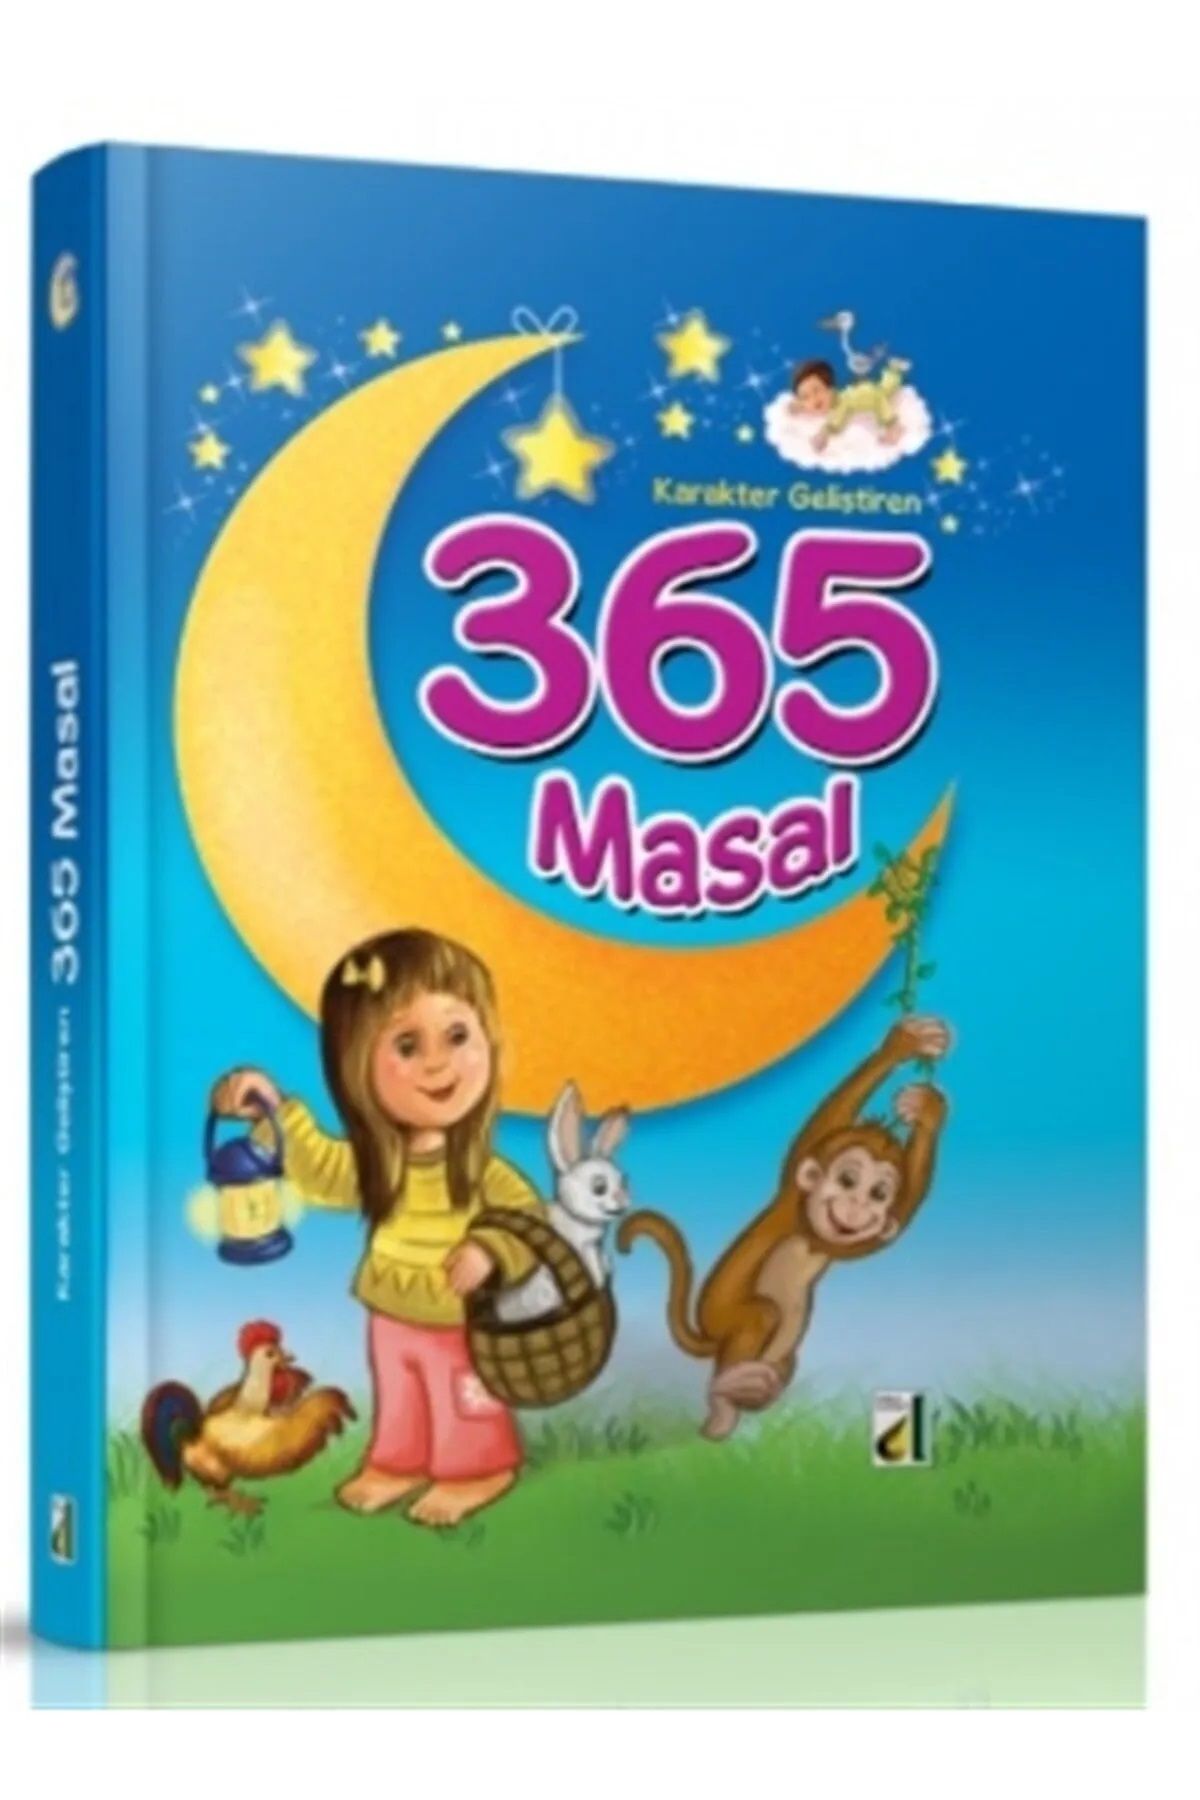 şazenur Karakter Geliştiren 365 Masal İlk Okuma Kitaplarım 1.Sınıf Çocuk Masal Öykü Hikaye Kitabı CİLTLİ